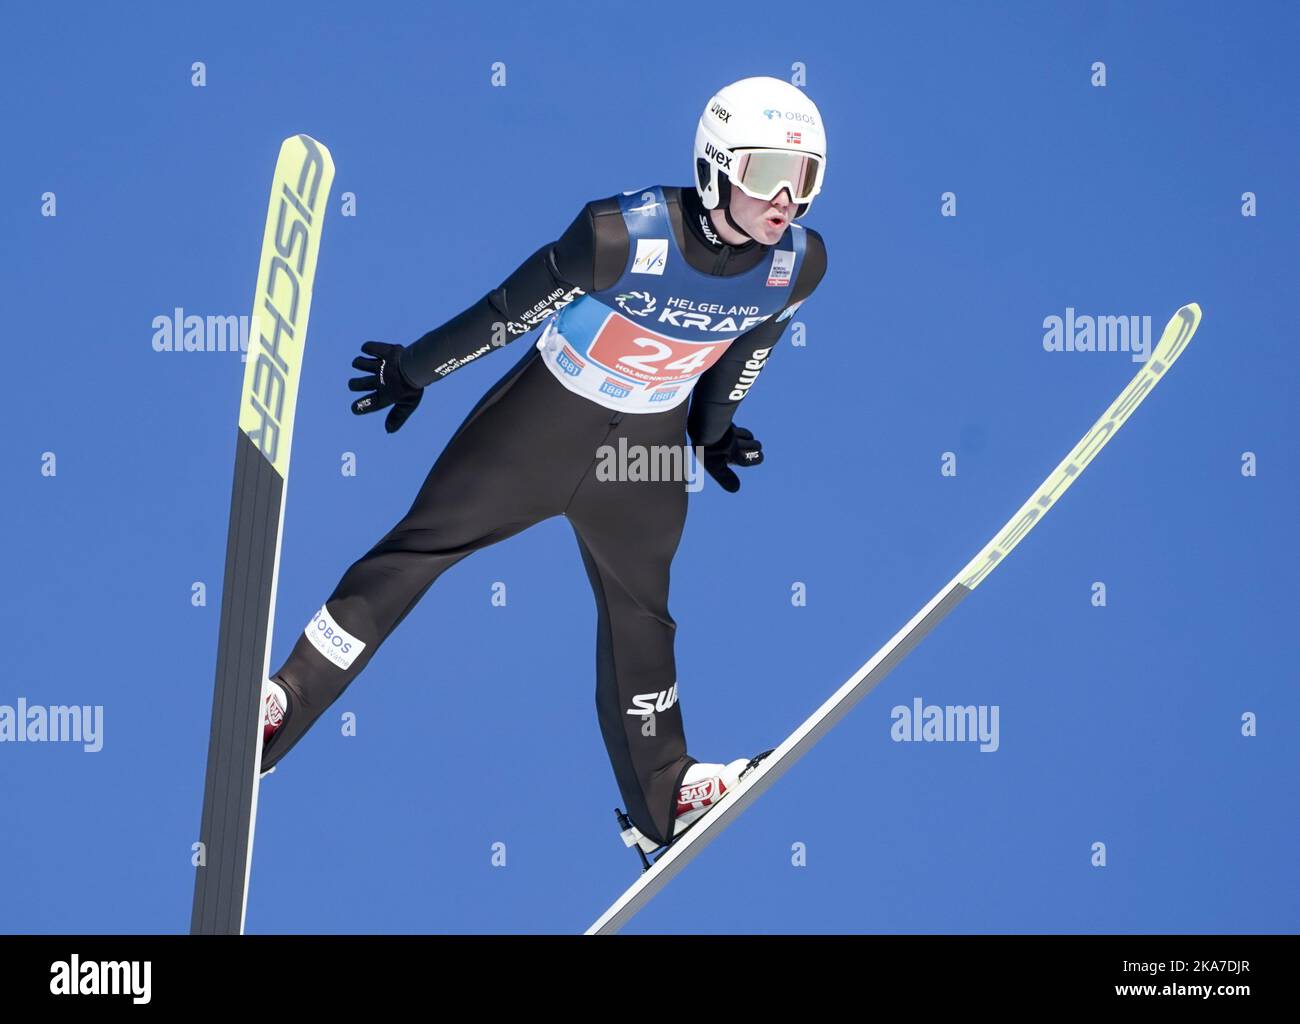 Oslo 20220305. Kasper Moen Flatla from Norway during a combined jump race in Holmenkollbakken. Photo: Terje Pedersen / NTB  Stock Photo